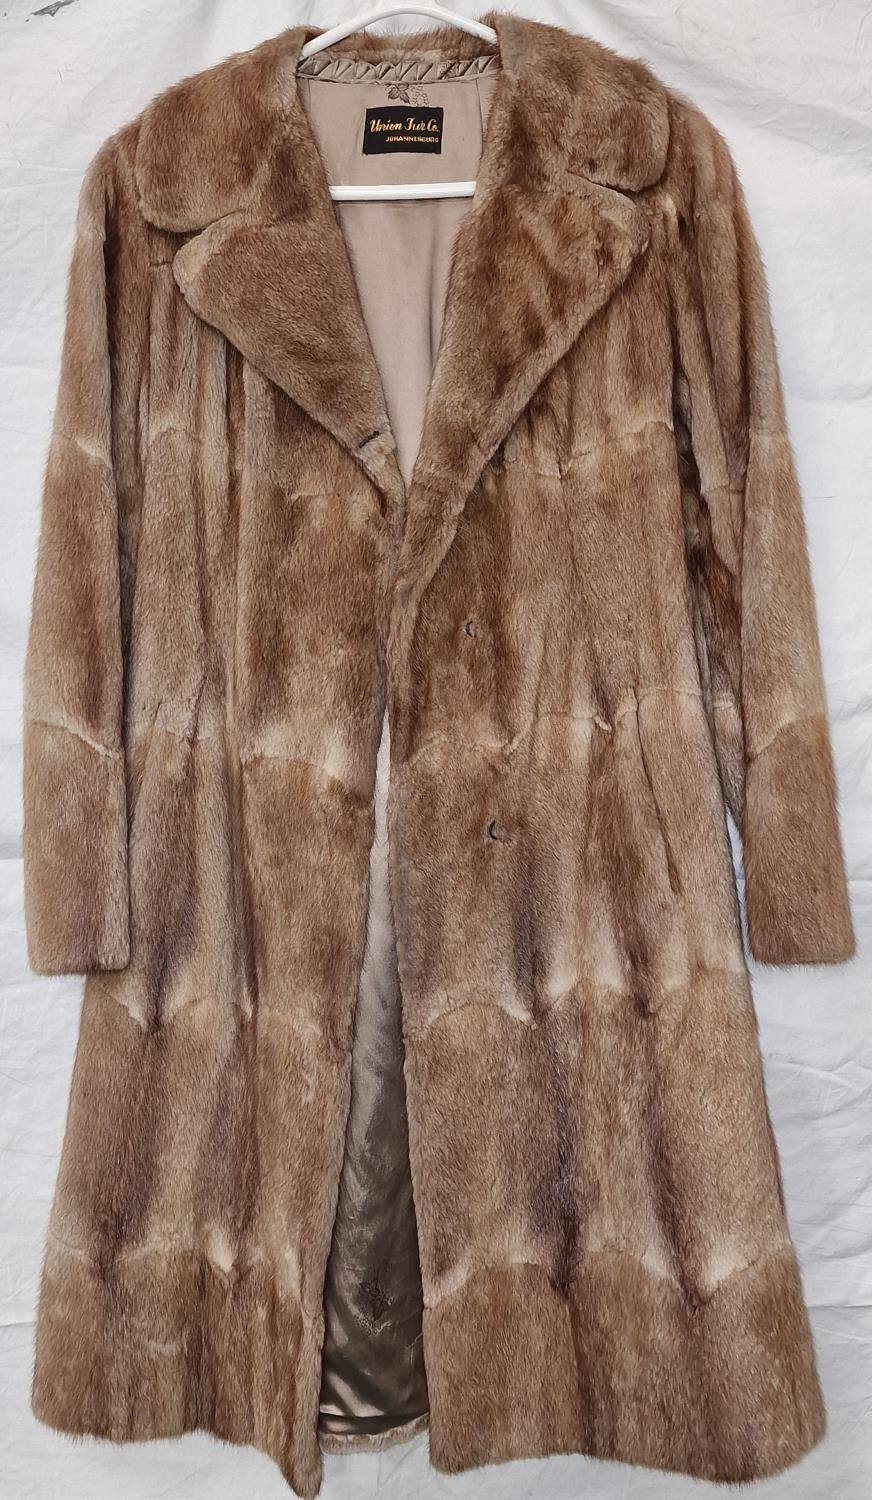 Vintage ladies South African rabbit fur coat by "Union Fur Co. Johannesburg" no size label.